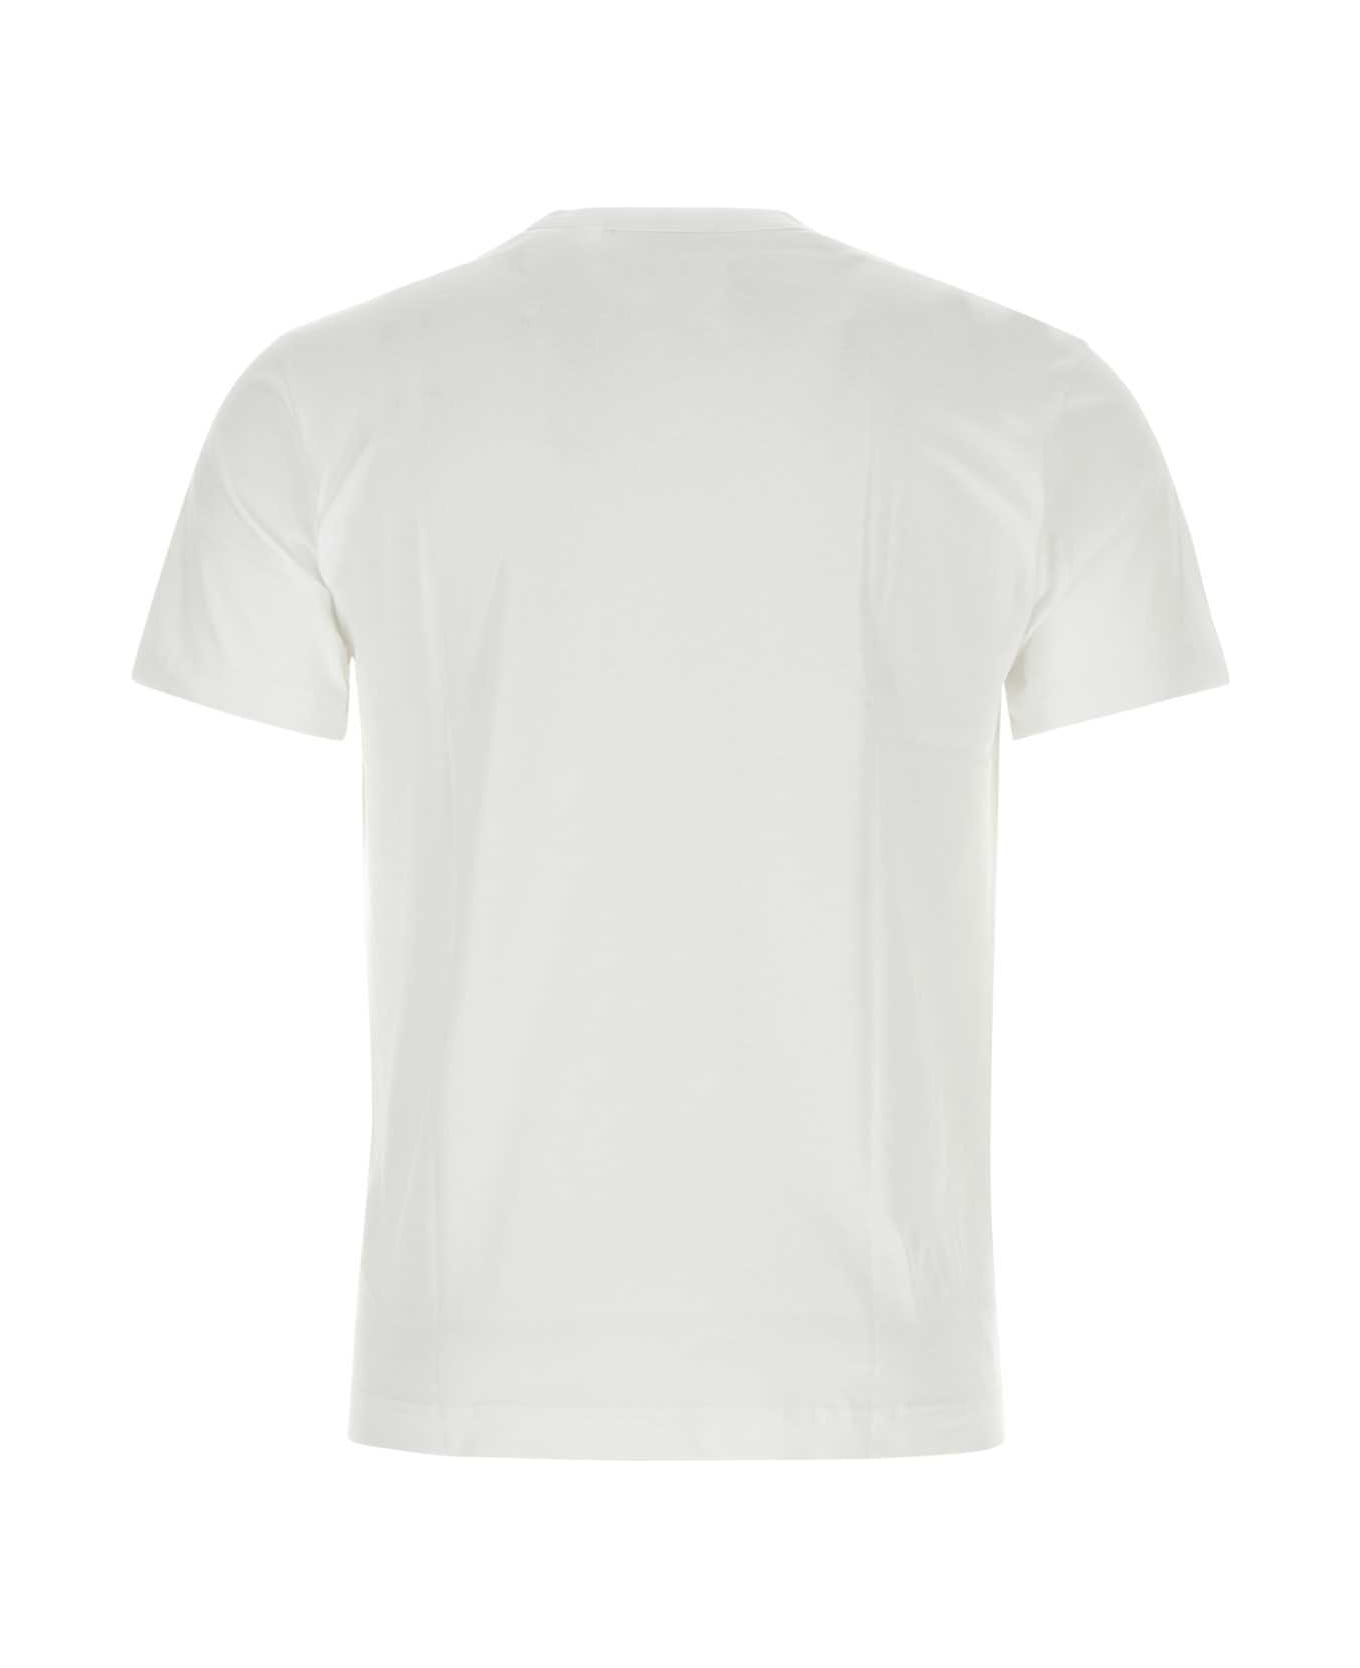 Comme des Garçons Shirt White Cotton T-shirt - WHITE